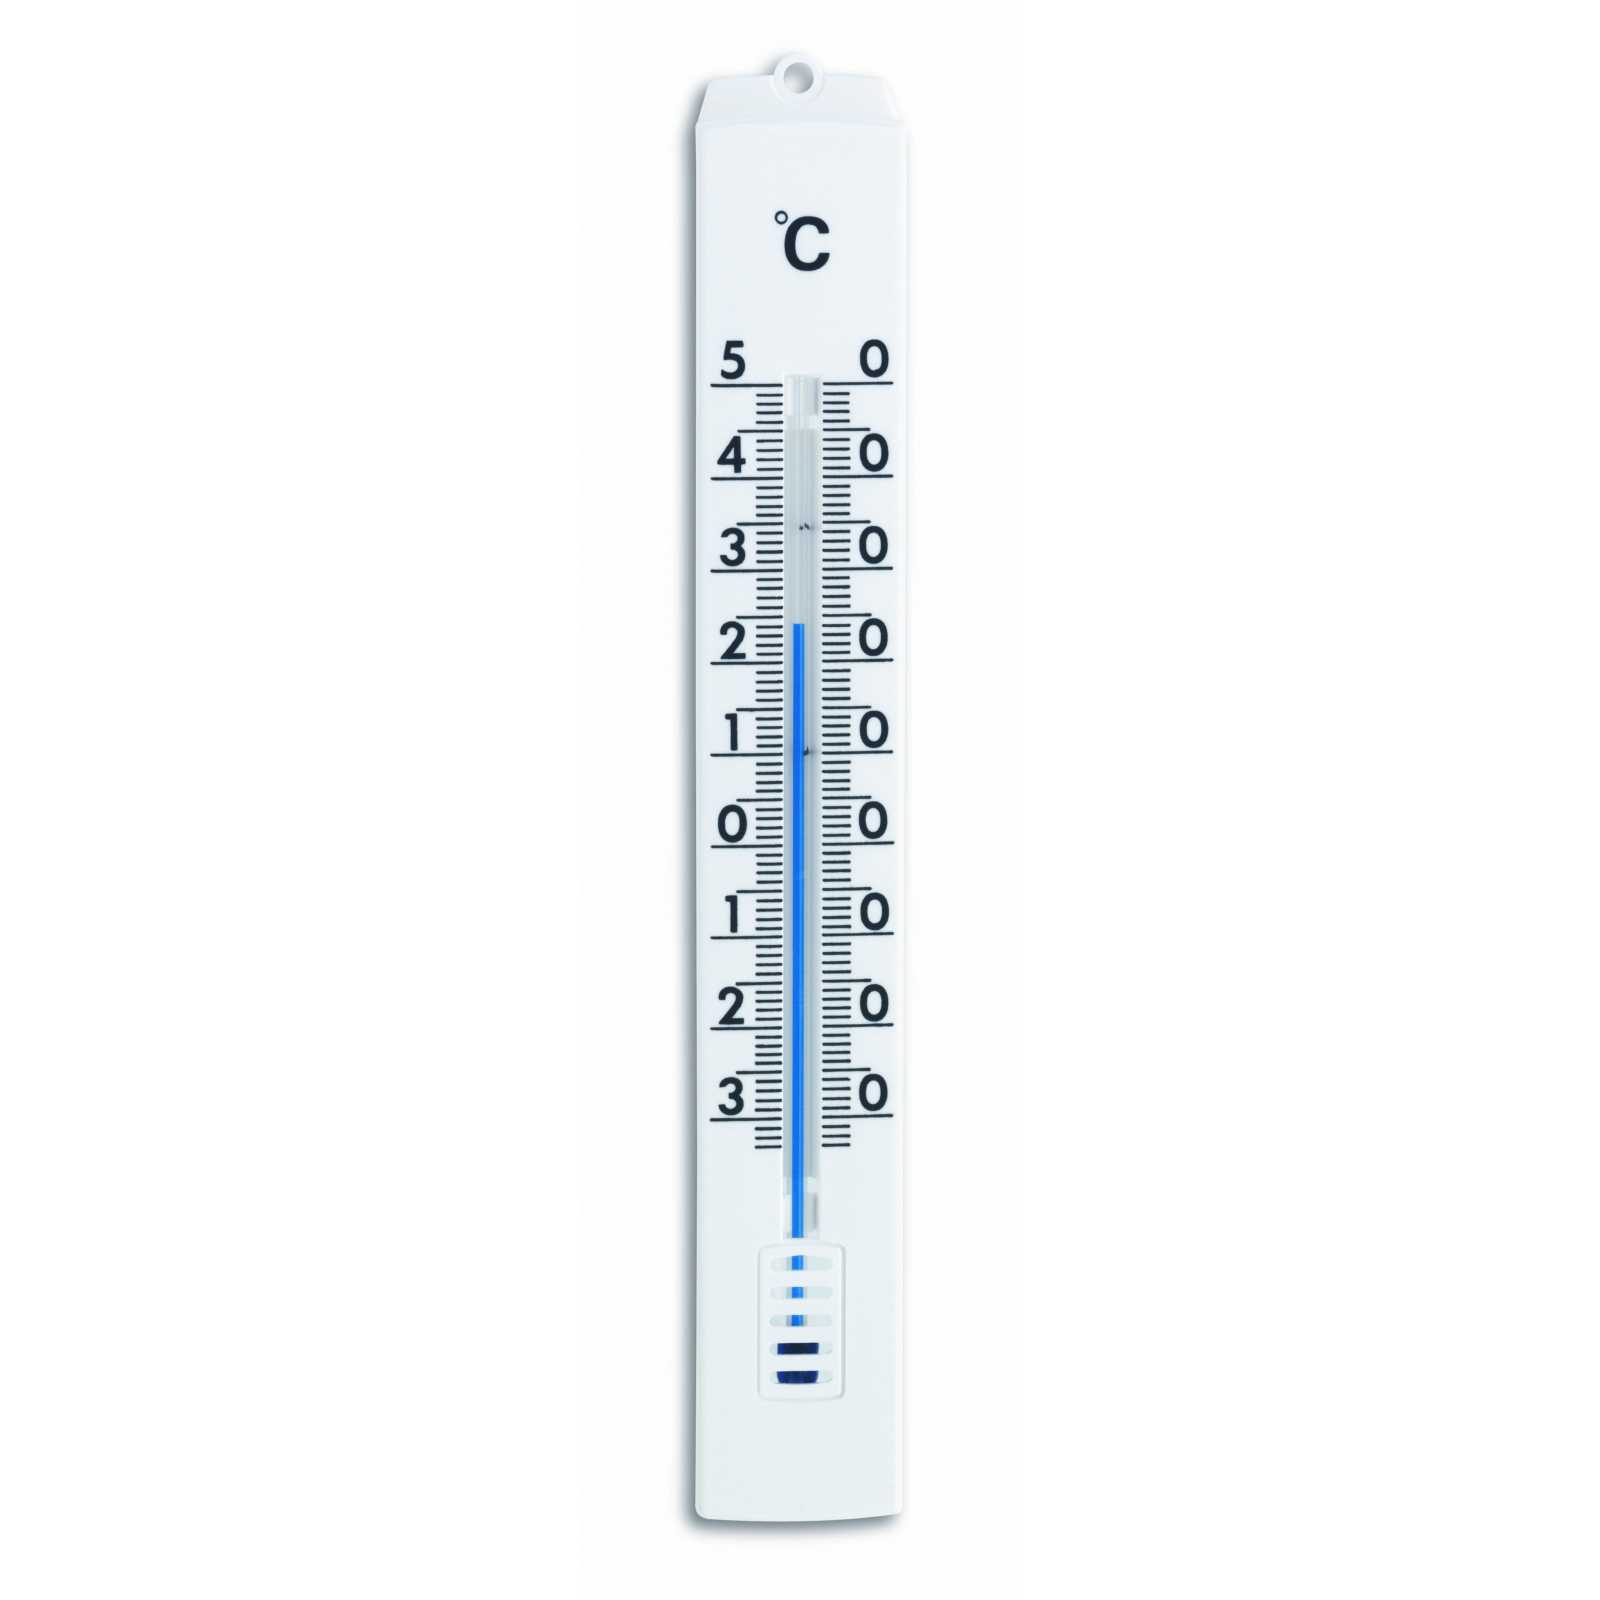 Innen Aussen Thermometer - WIPEX Werbemittel, Werbeartikel & Giveaways